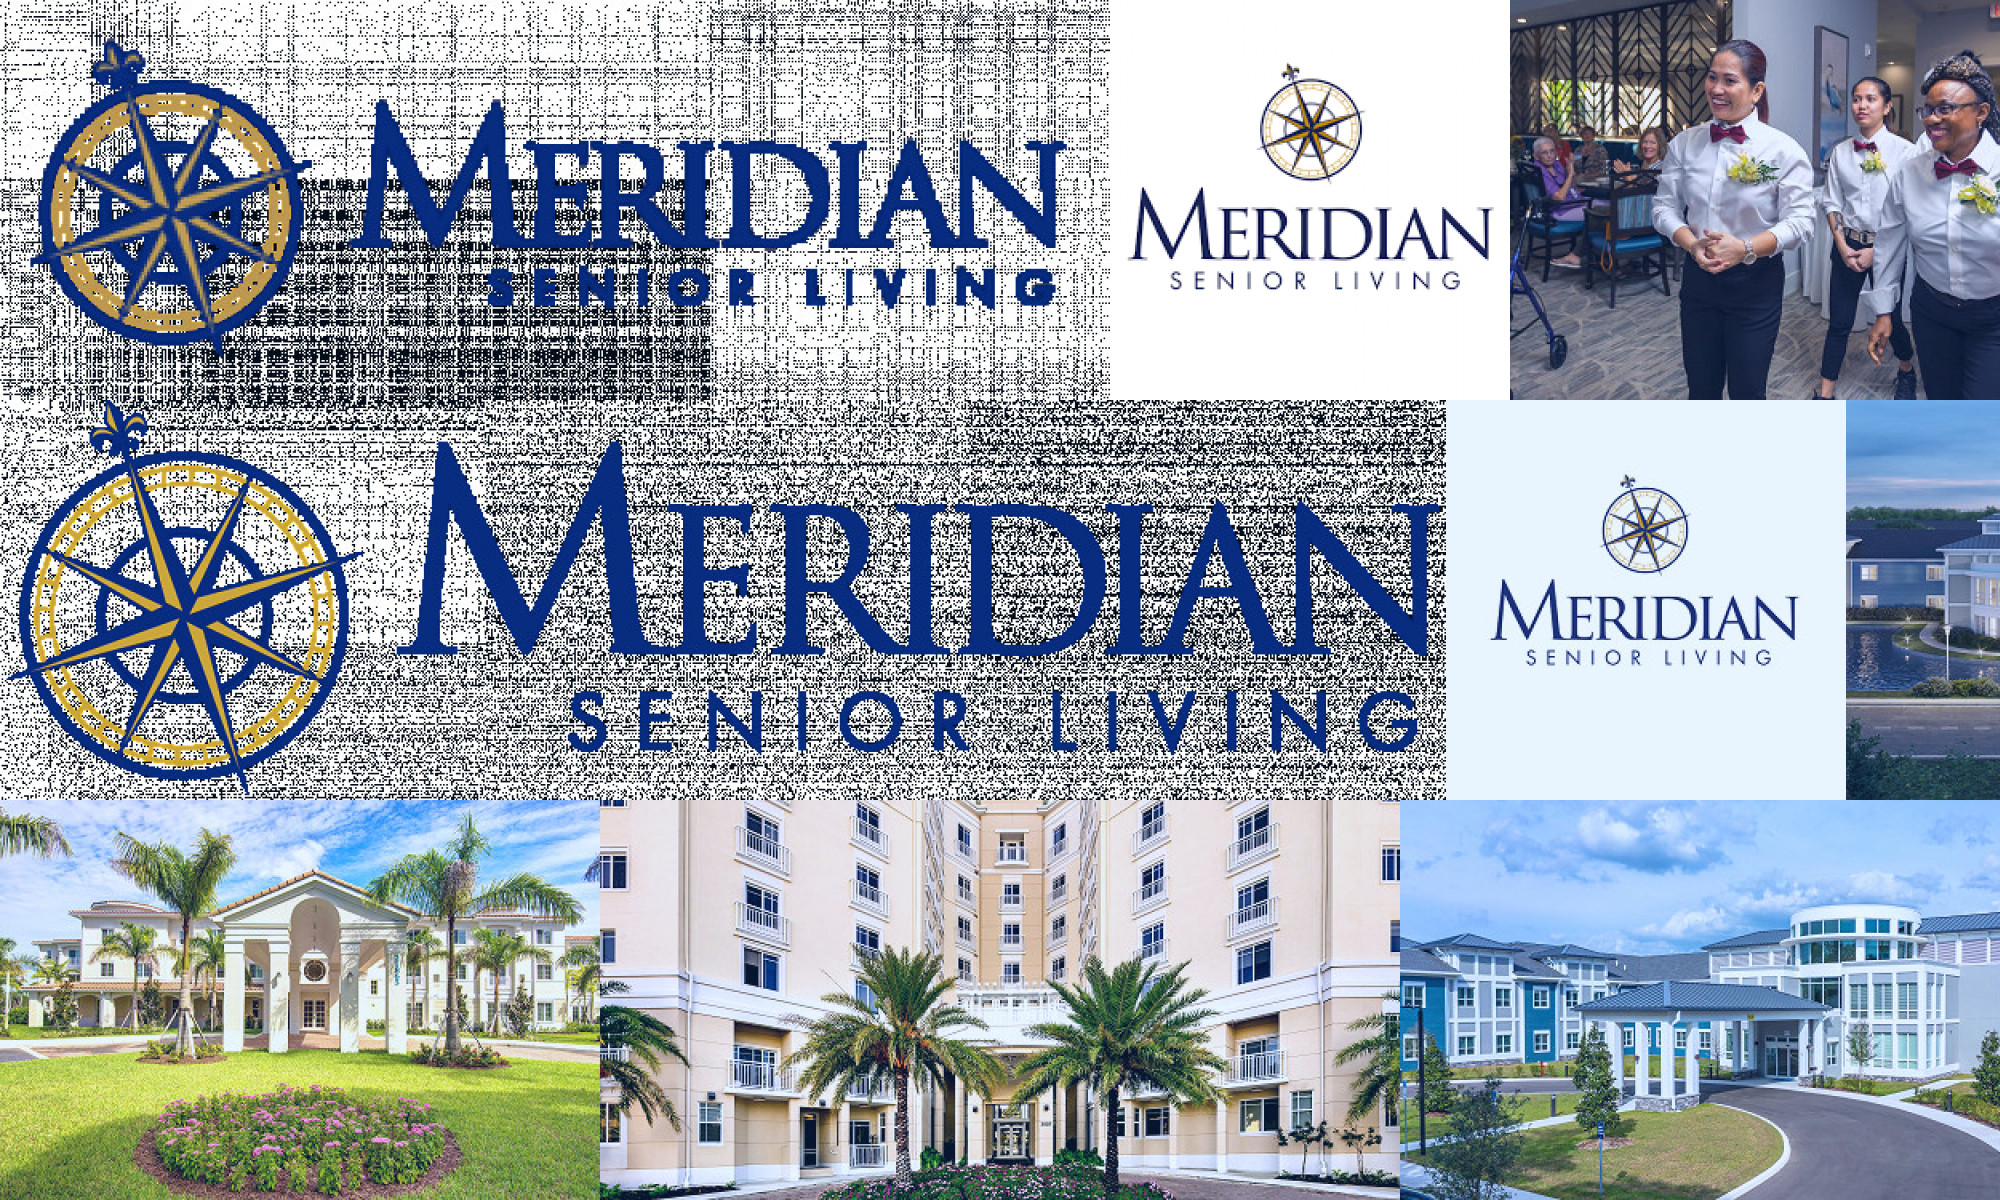 meridian senior living